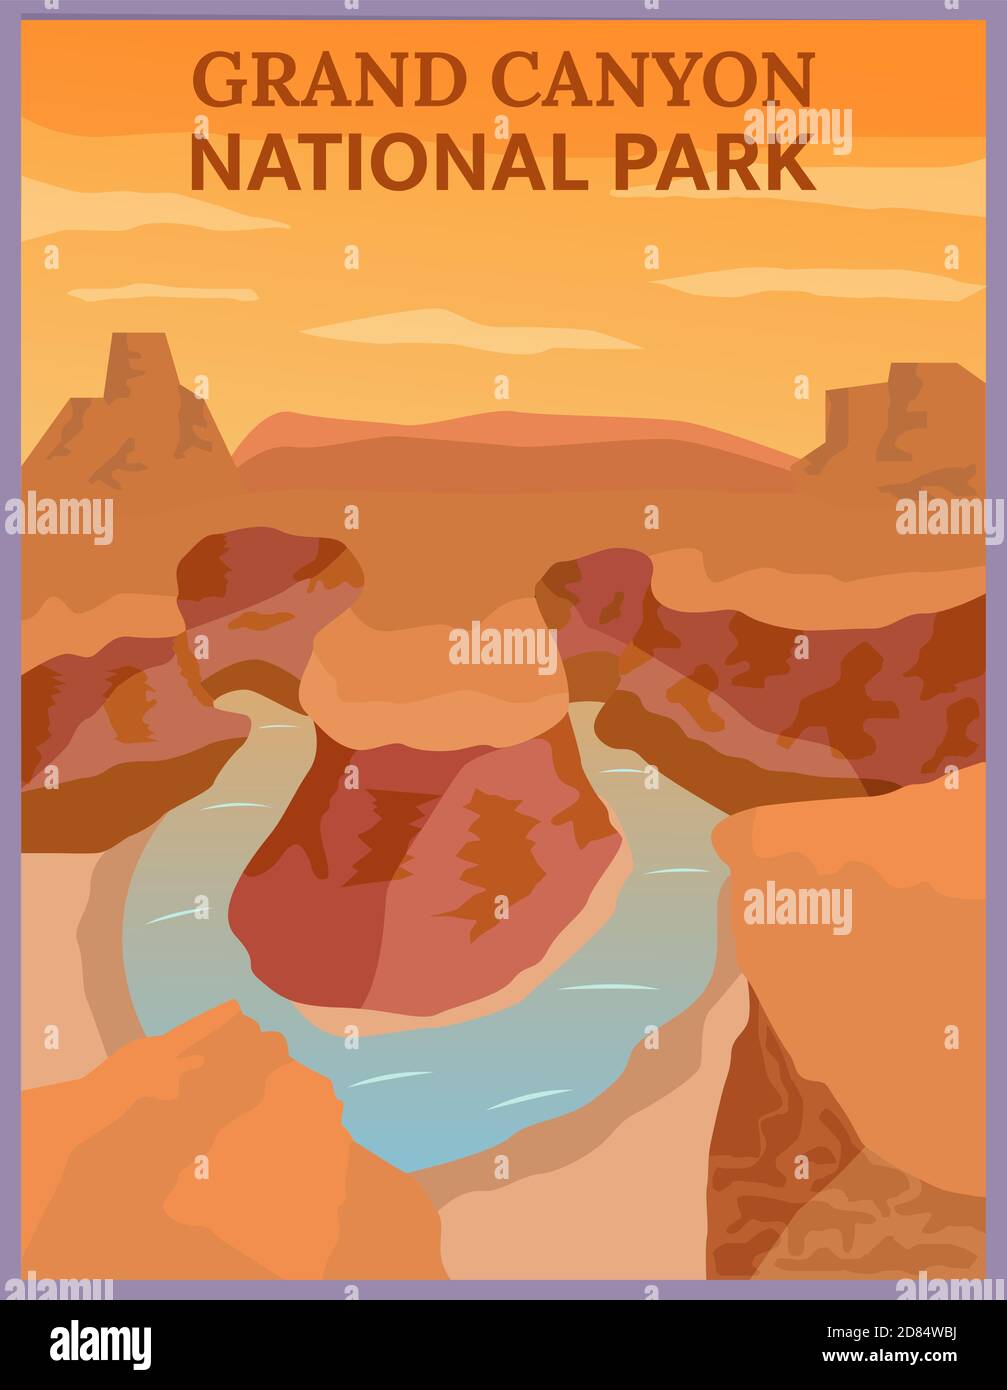 Illustrazione disegno vettoriale di retrò e vintage poster di viaggio del Grand Canyon, Arizona. Illustrazione Vettoriale